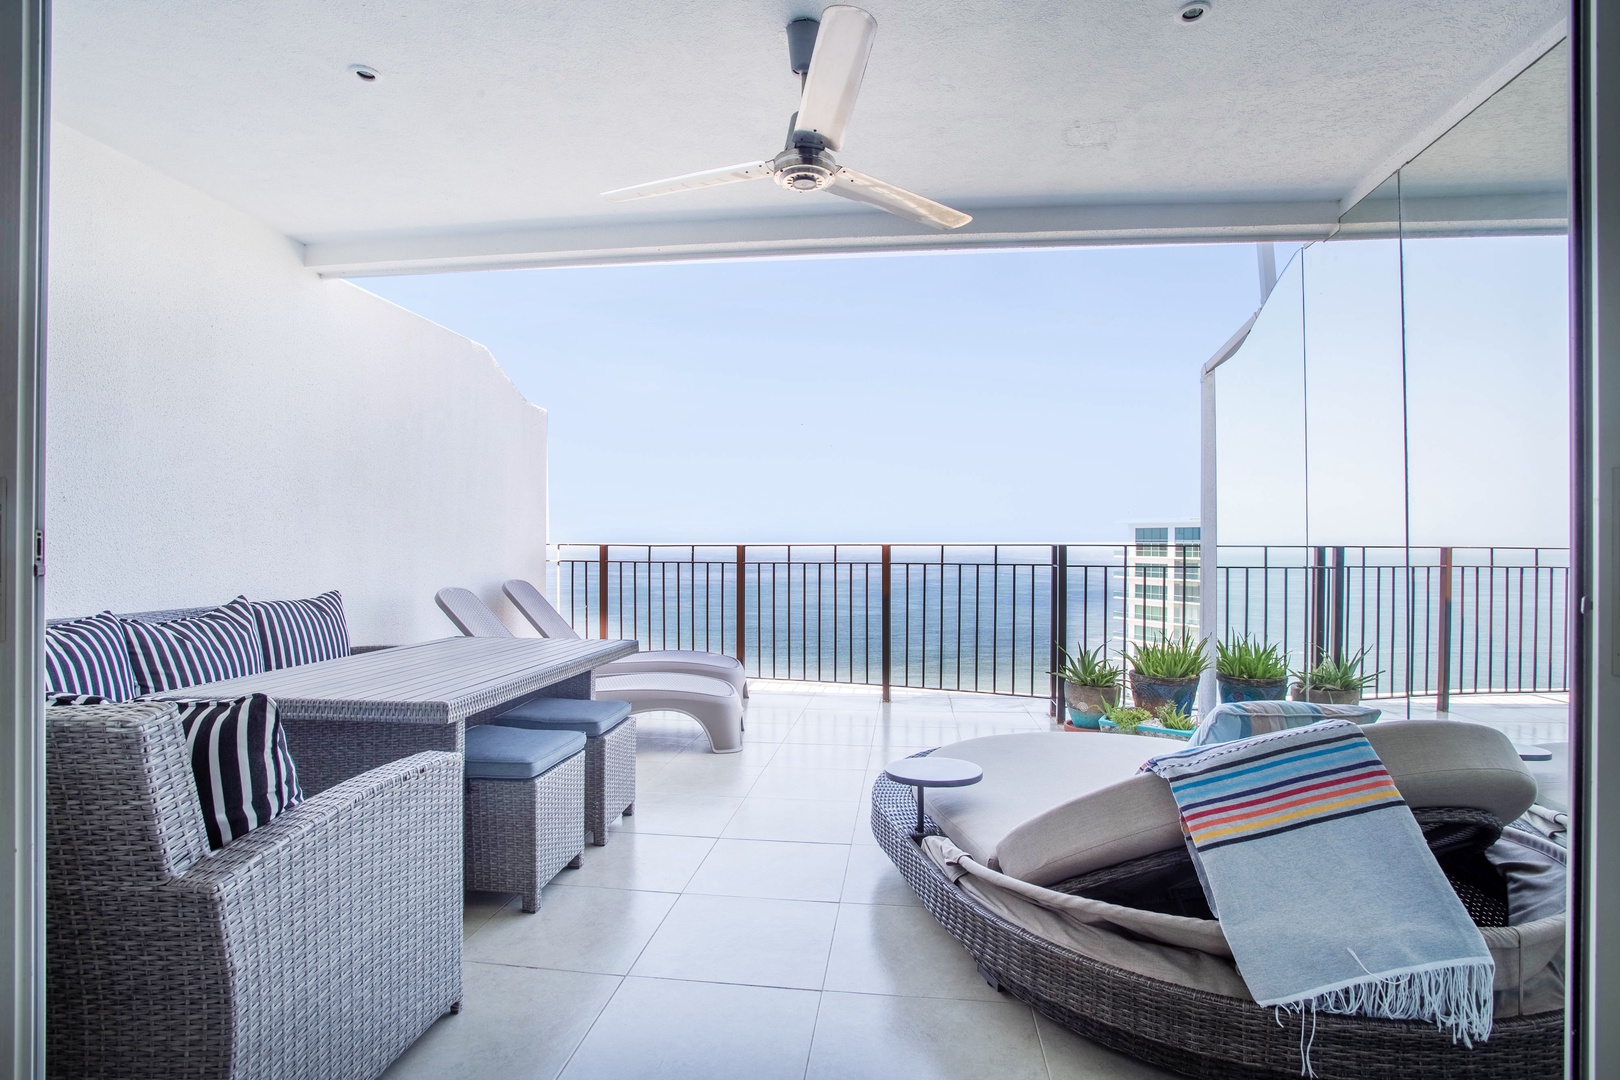 “OgoVallarta” 2 Bedroom Beachfront with Double Balcony, Office, BBQ